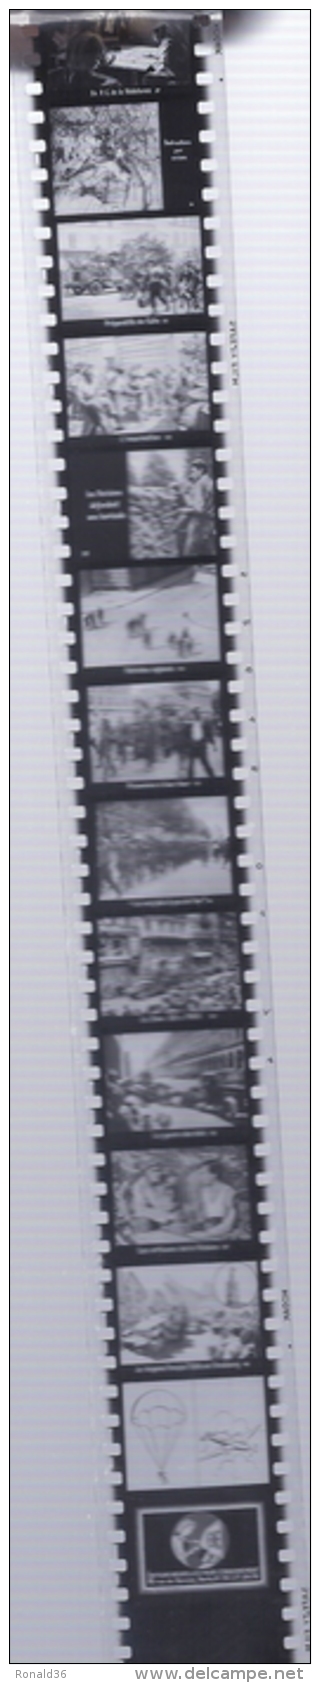 mini film histoire de france résistance et libération guerre 1939 1945 exode alerte restriction camp défile allemand